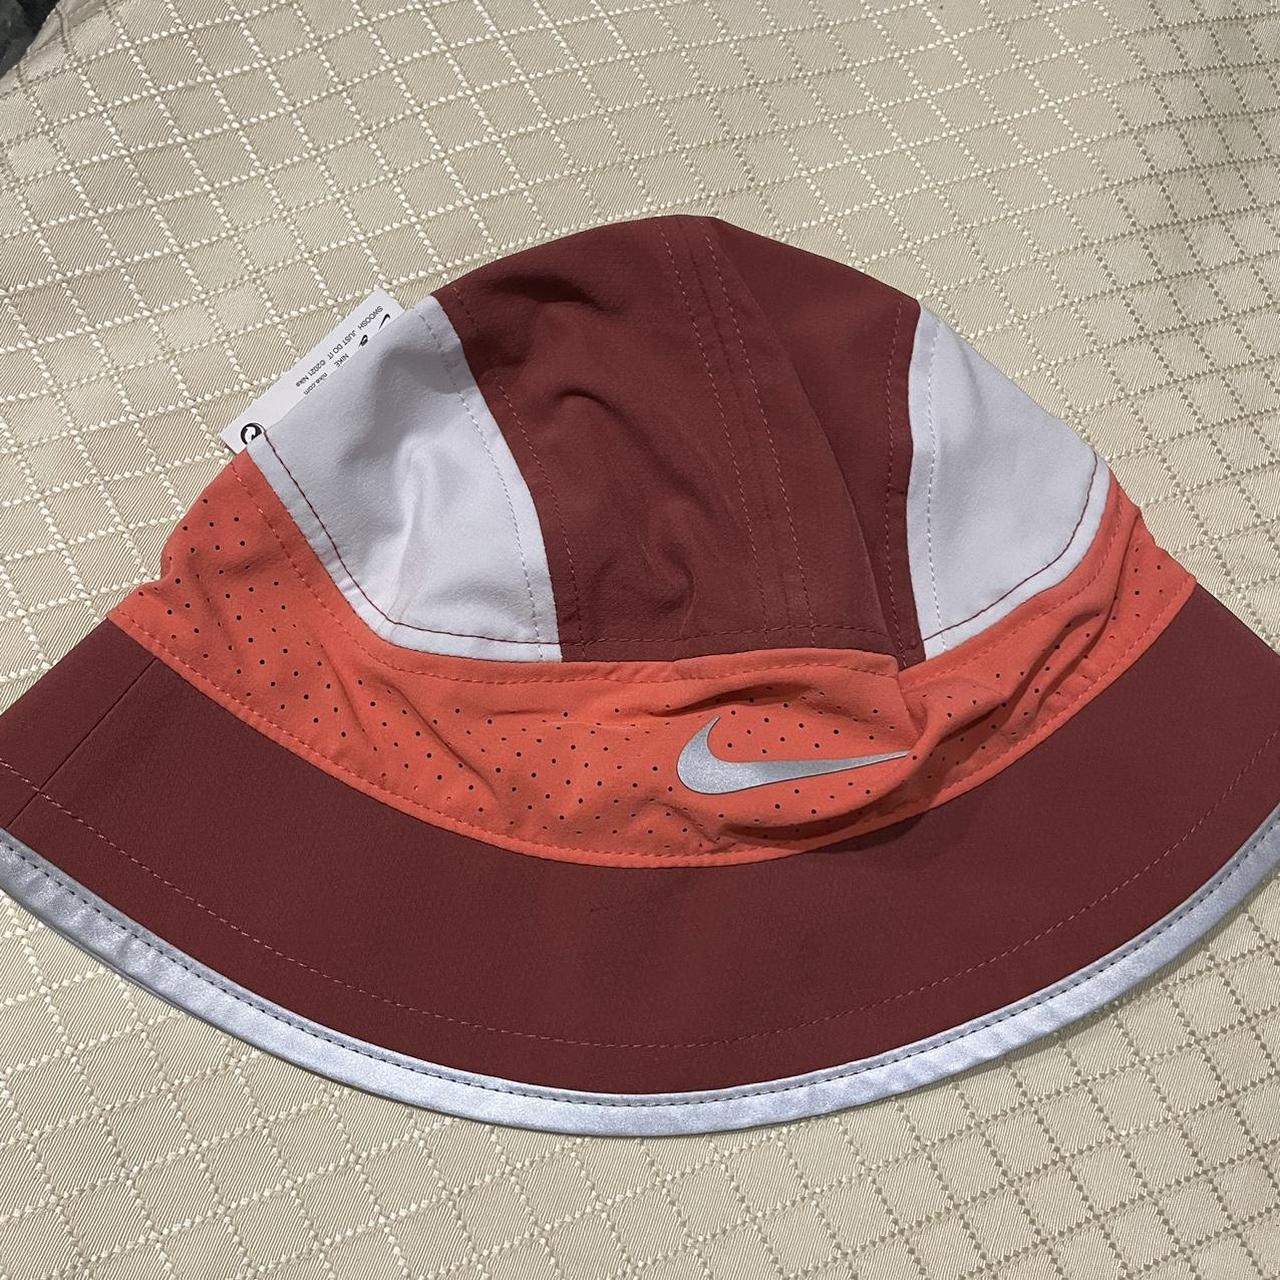 Nike bucket-hat - Depop